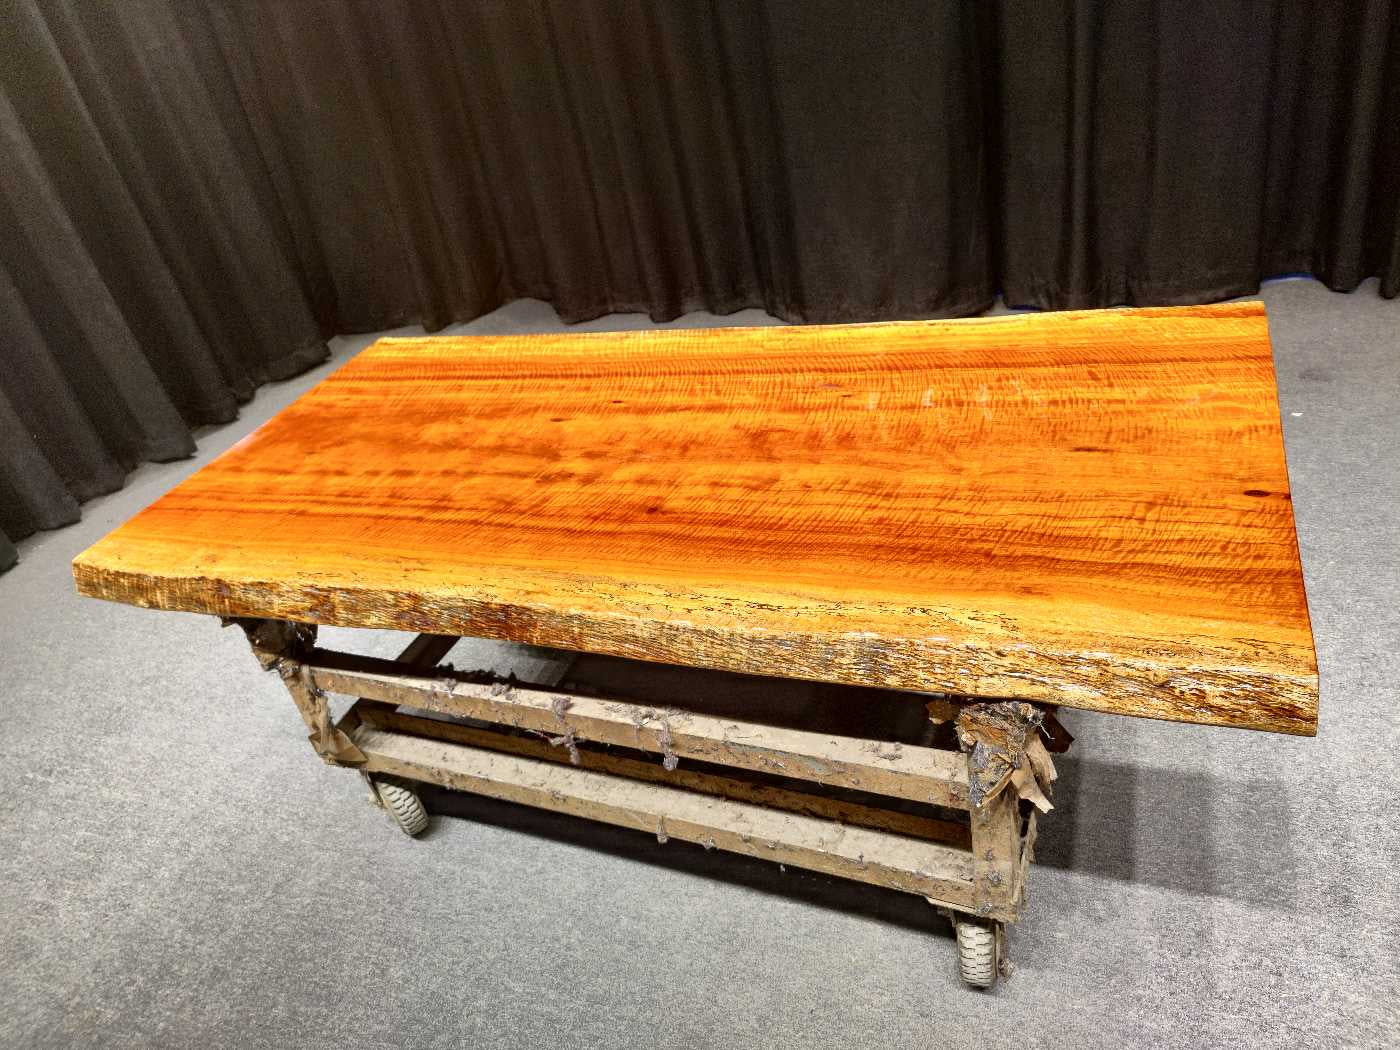 Laje de mesa de madeira maciça da Zâmbia, <tc>Rhodesian Copal wood</tc> mesa de laje de borda viva